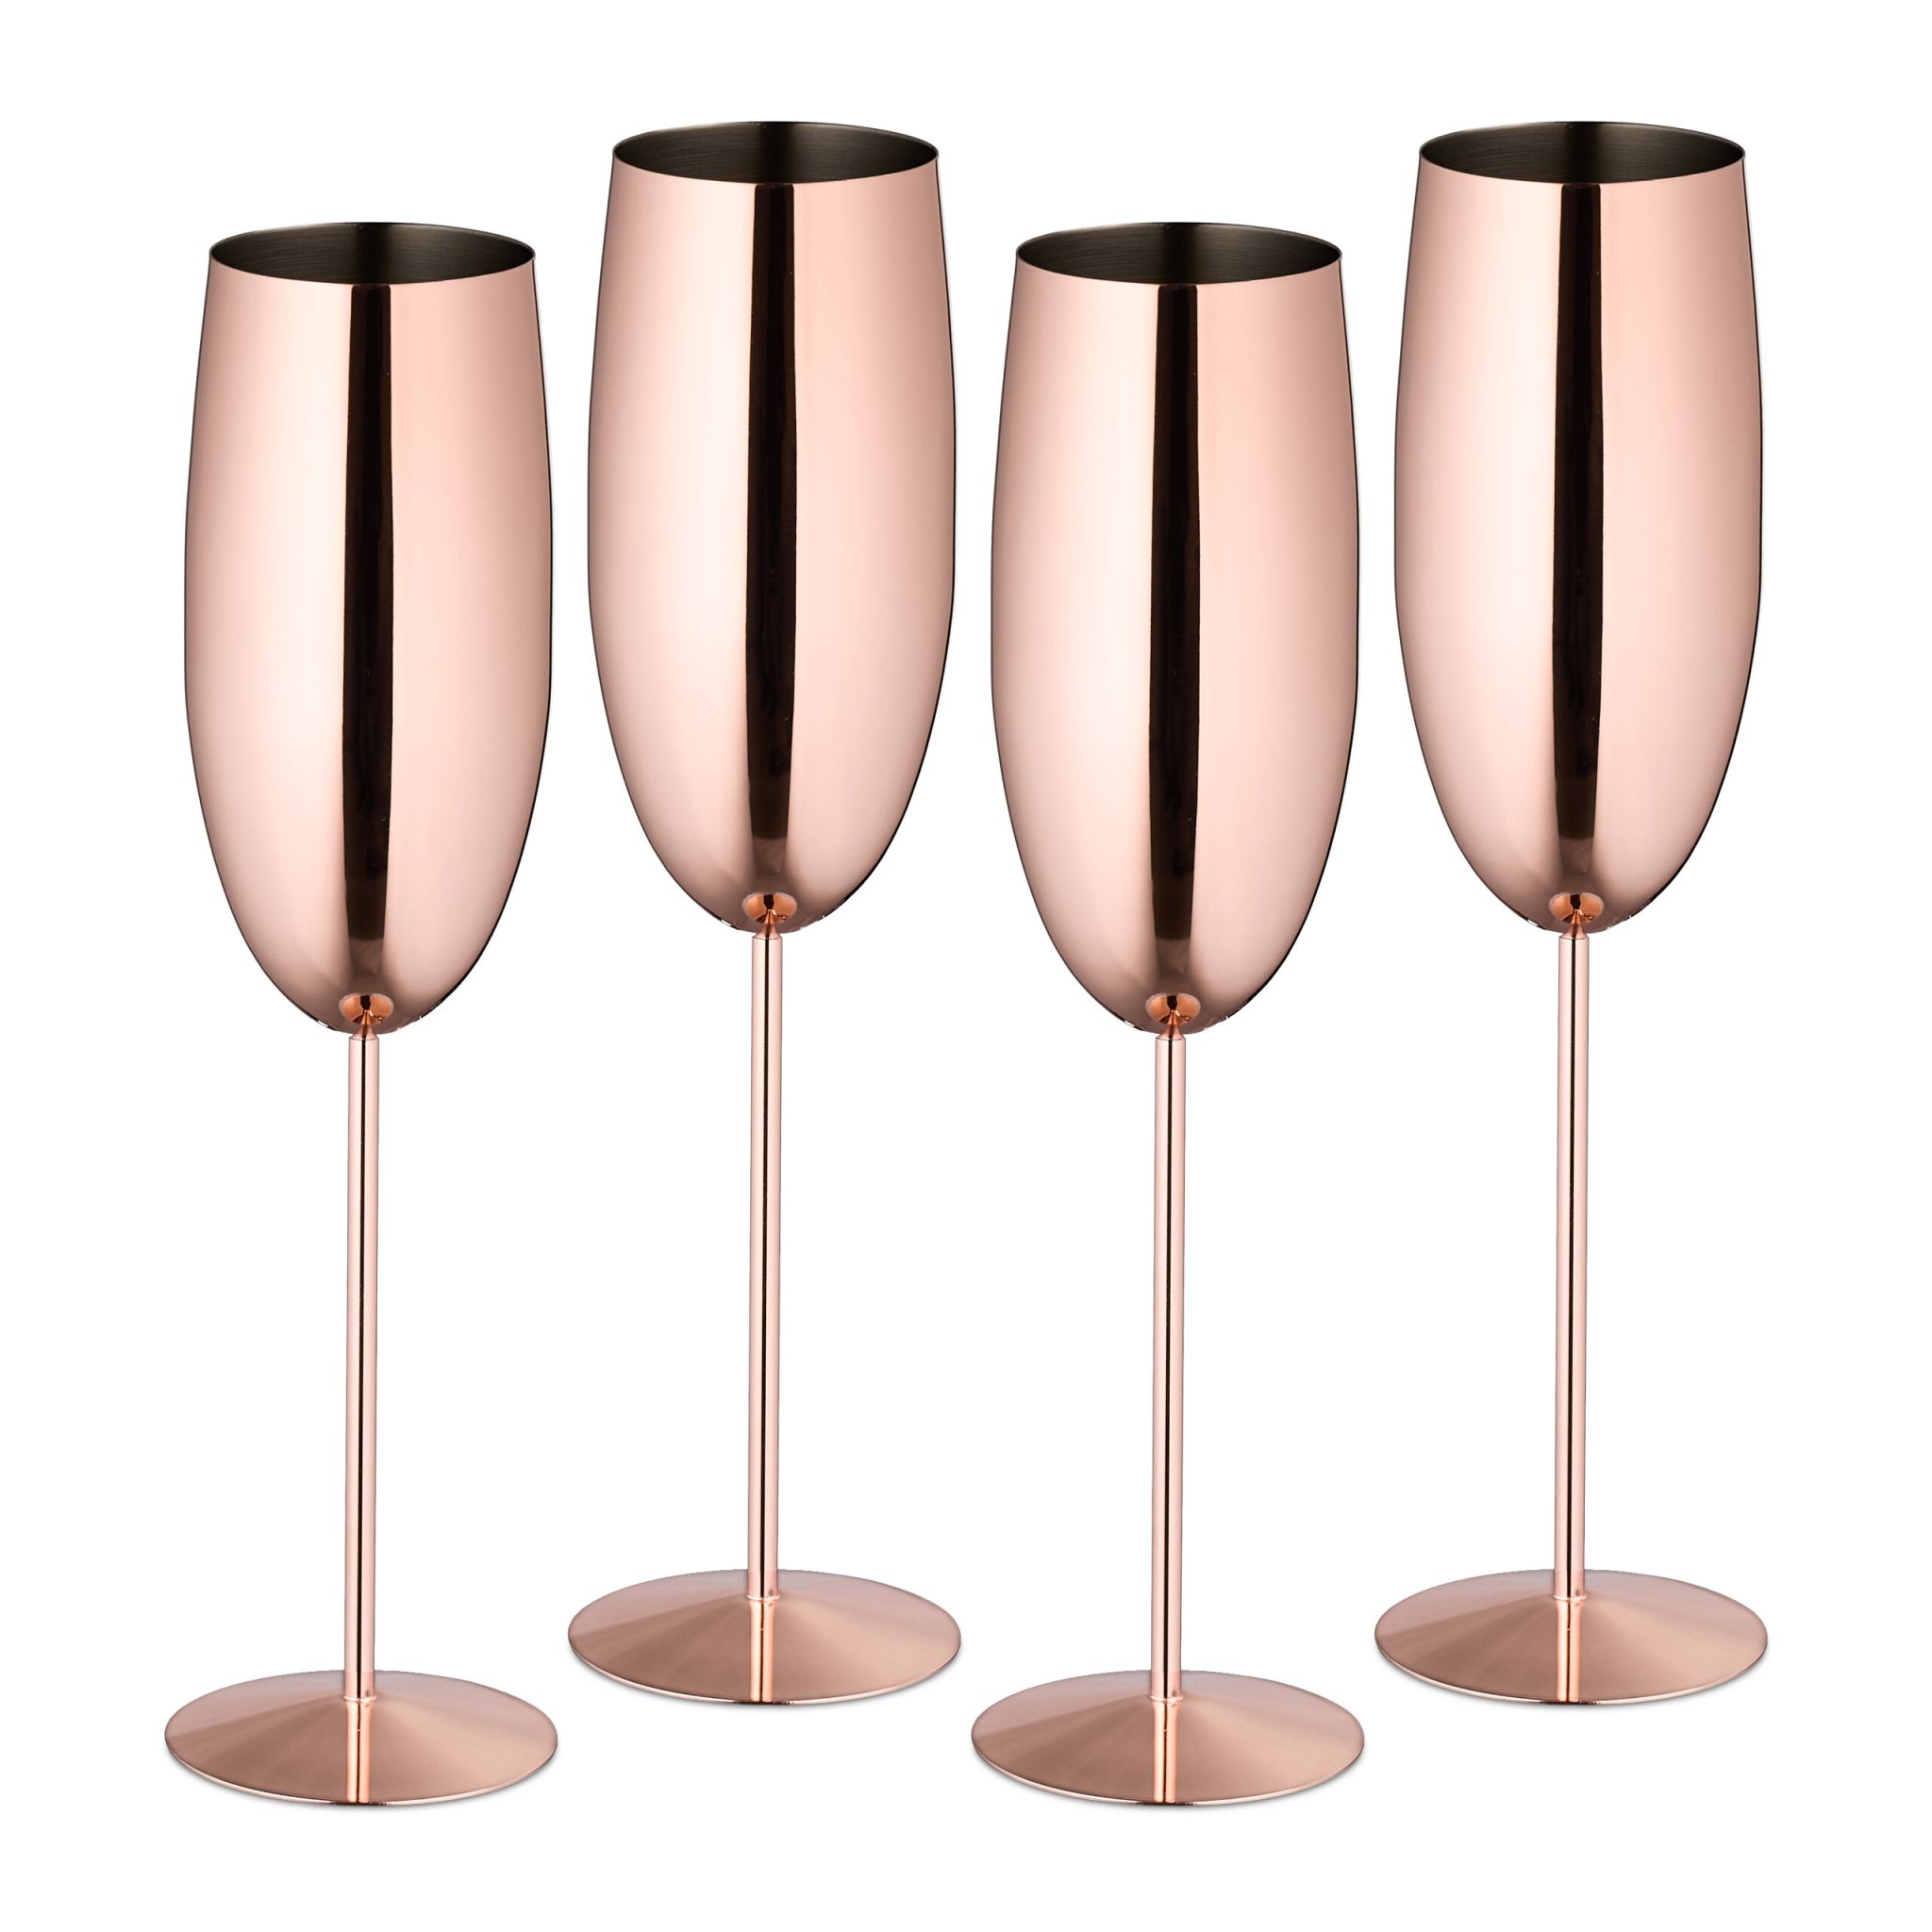 E-shop Sada 4ks pohárov na šampanské RD49332, ružová